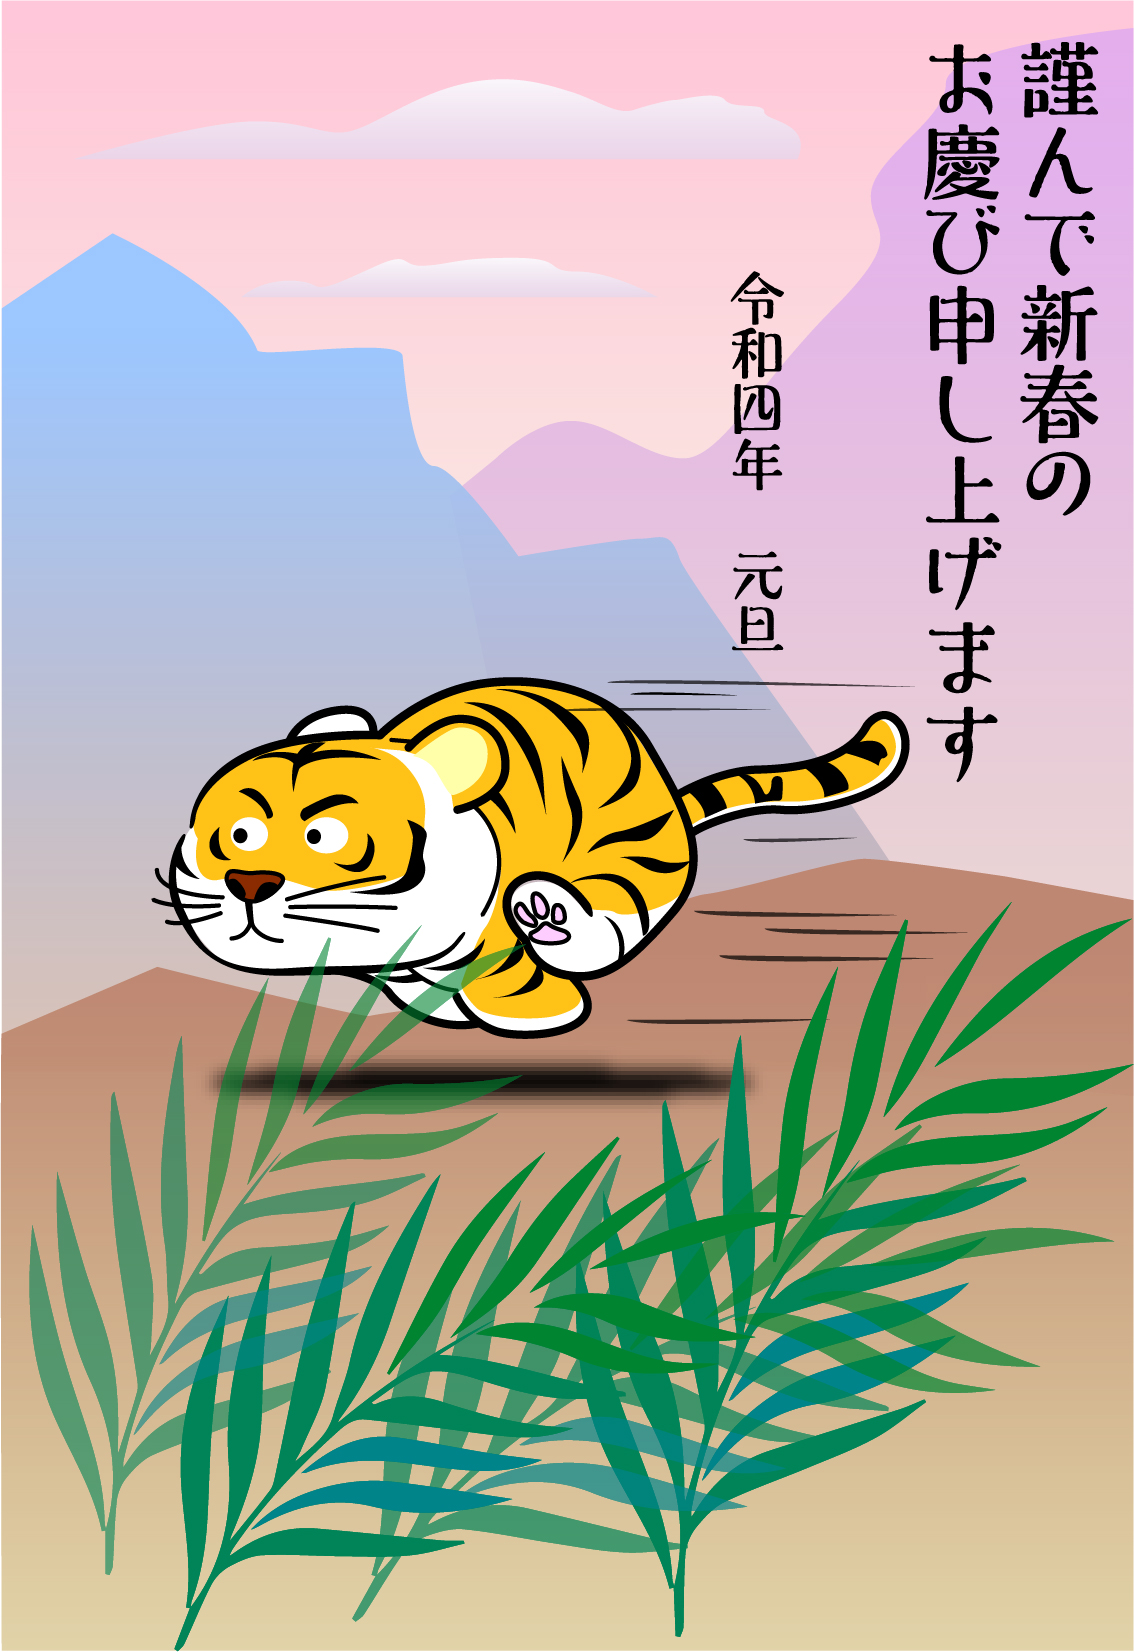 目標に向かい走る虎から元気を貰える2022年の干支がイラストで描かれた年賀状